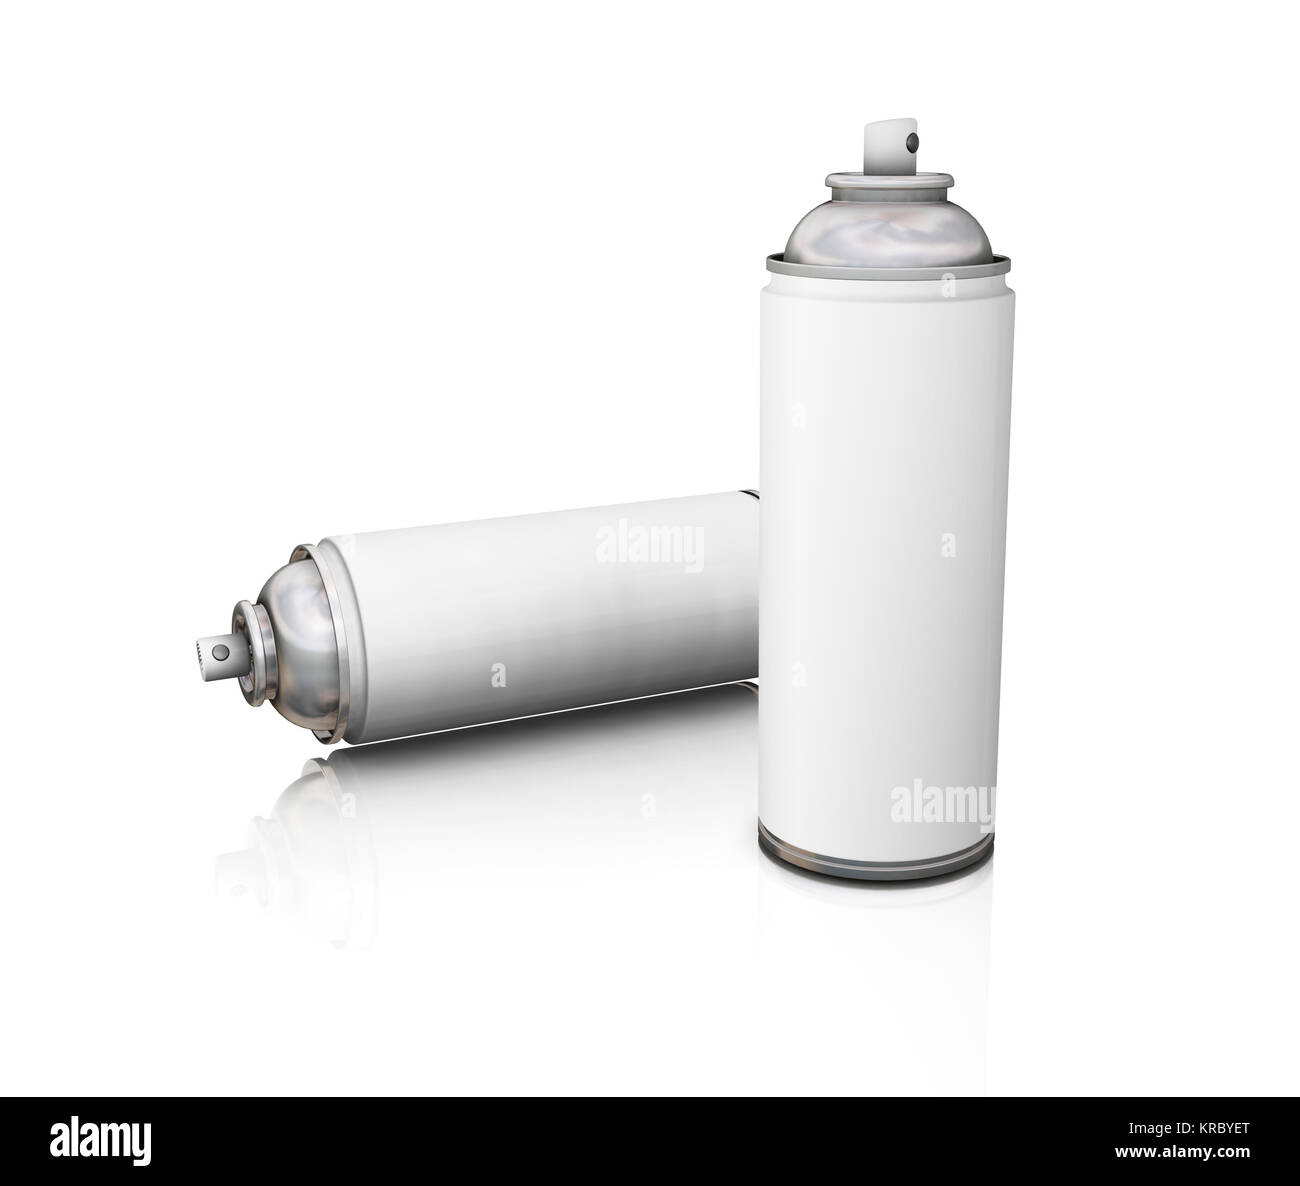 3 en 1 Aceite Multiusos spray aerosol, UK Fotografía de stock - Alamy